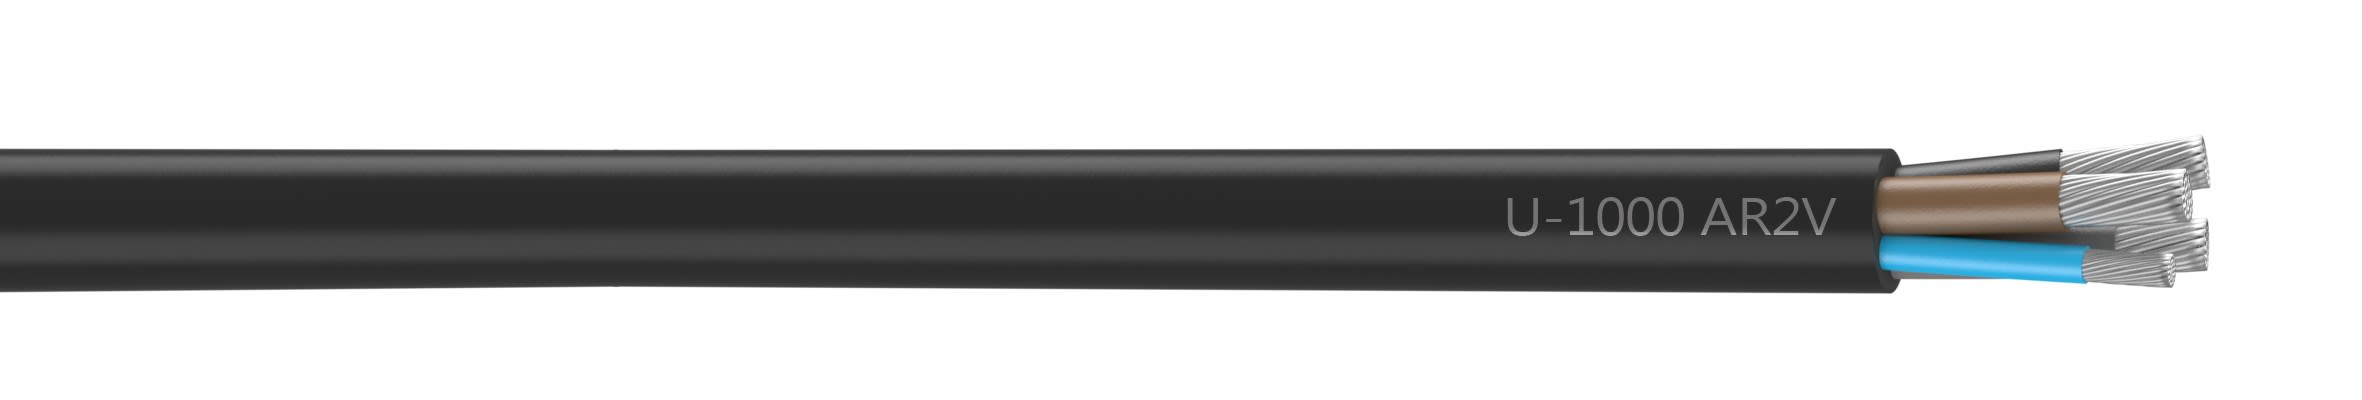 Nexans - CâbleU-1000 AR2V aluminium 3x70+50 longueur à la coupe